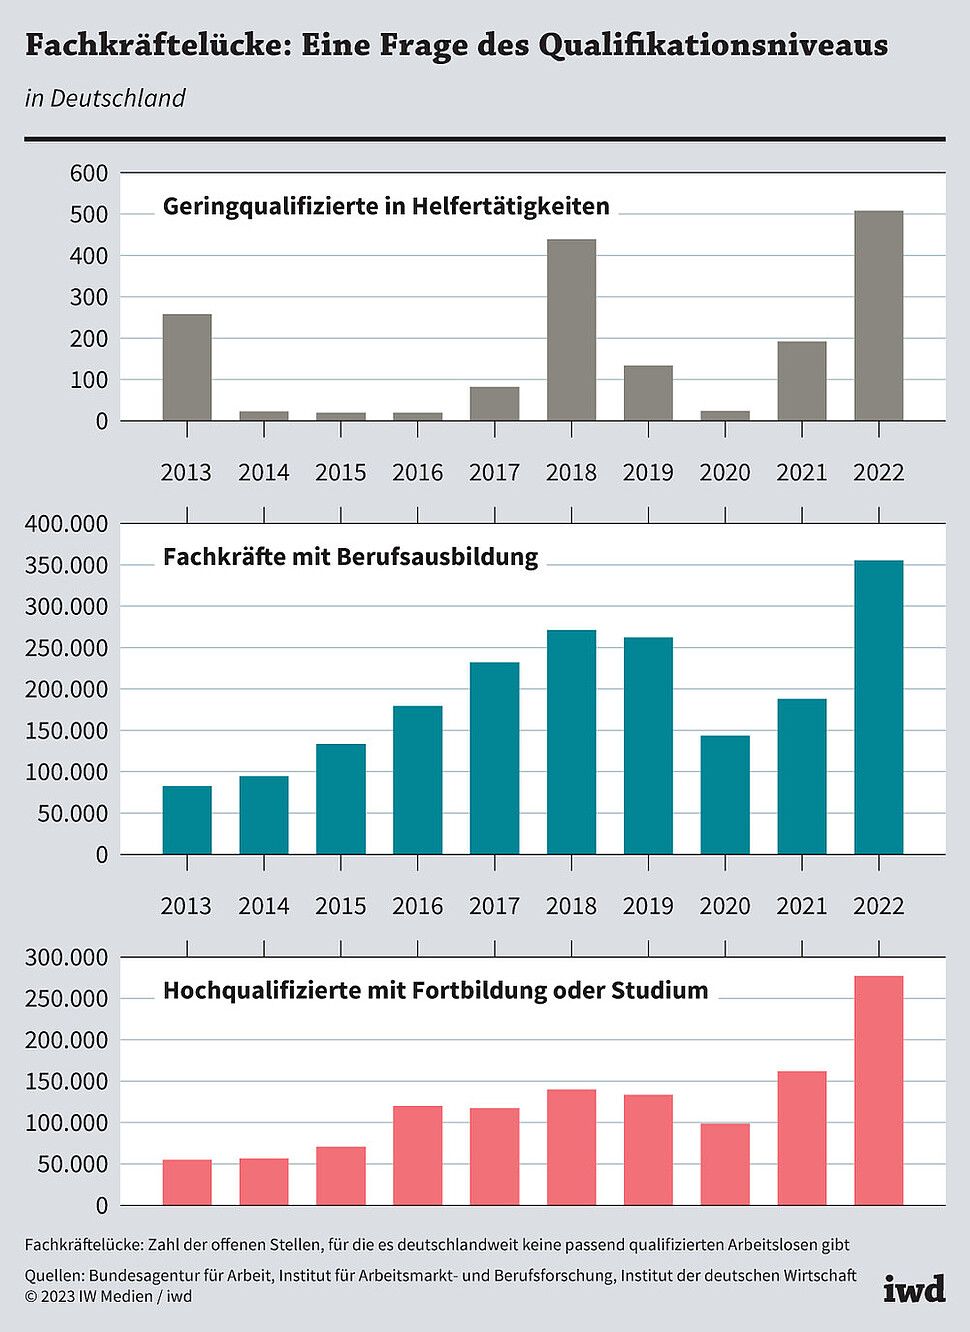 Fachkräftelücke bei Geringqualifizierten, Fachkräften und Hochqualifizierten in Deutschland